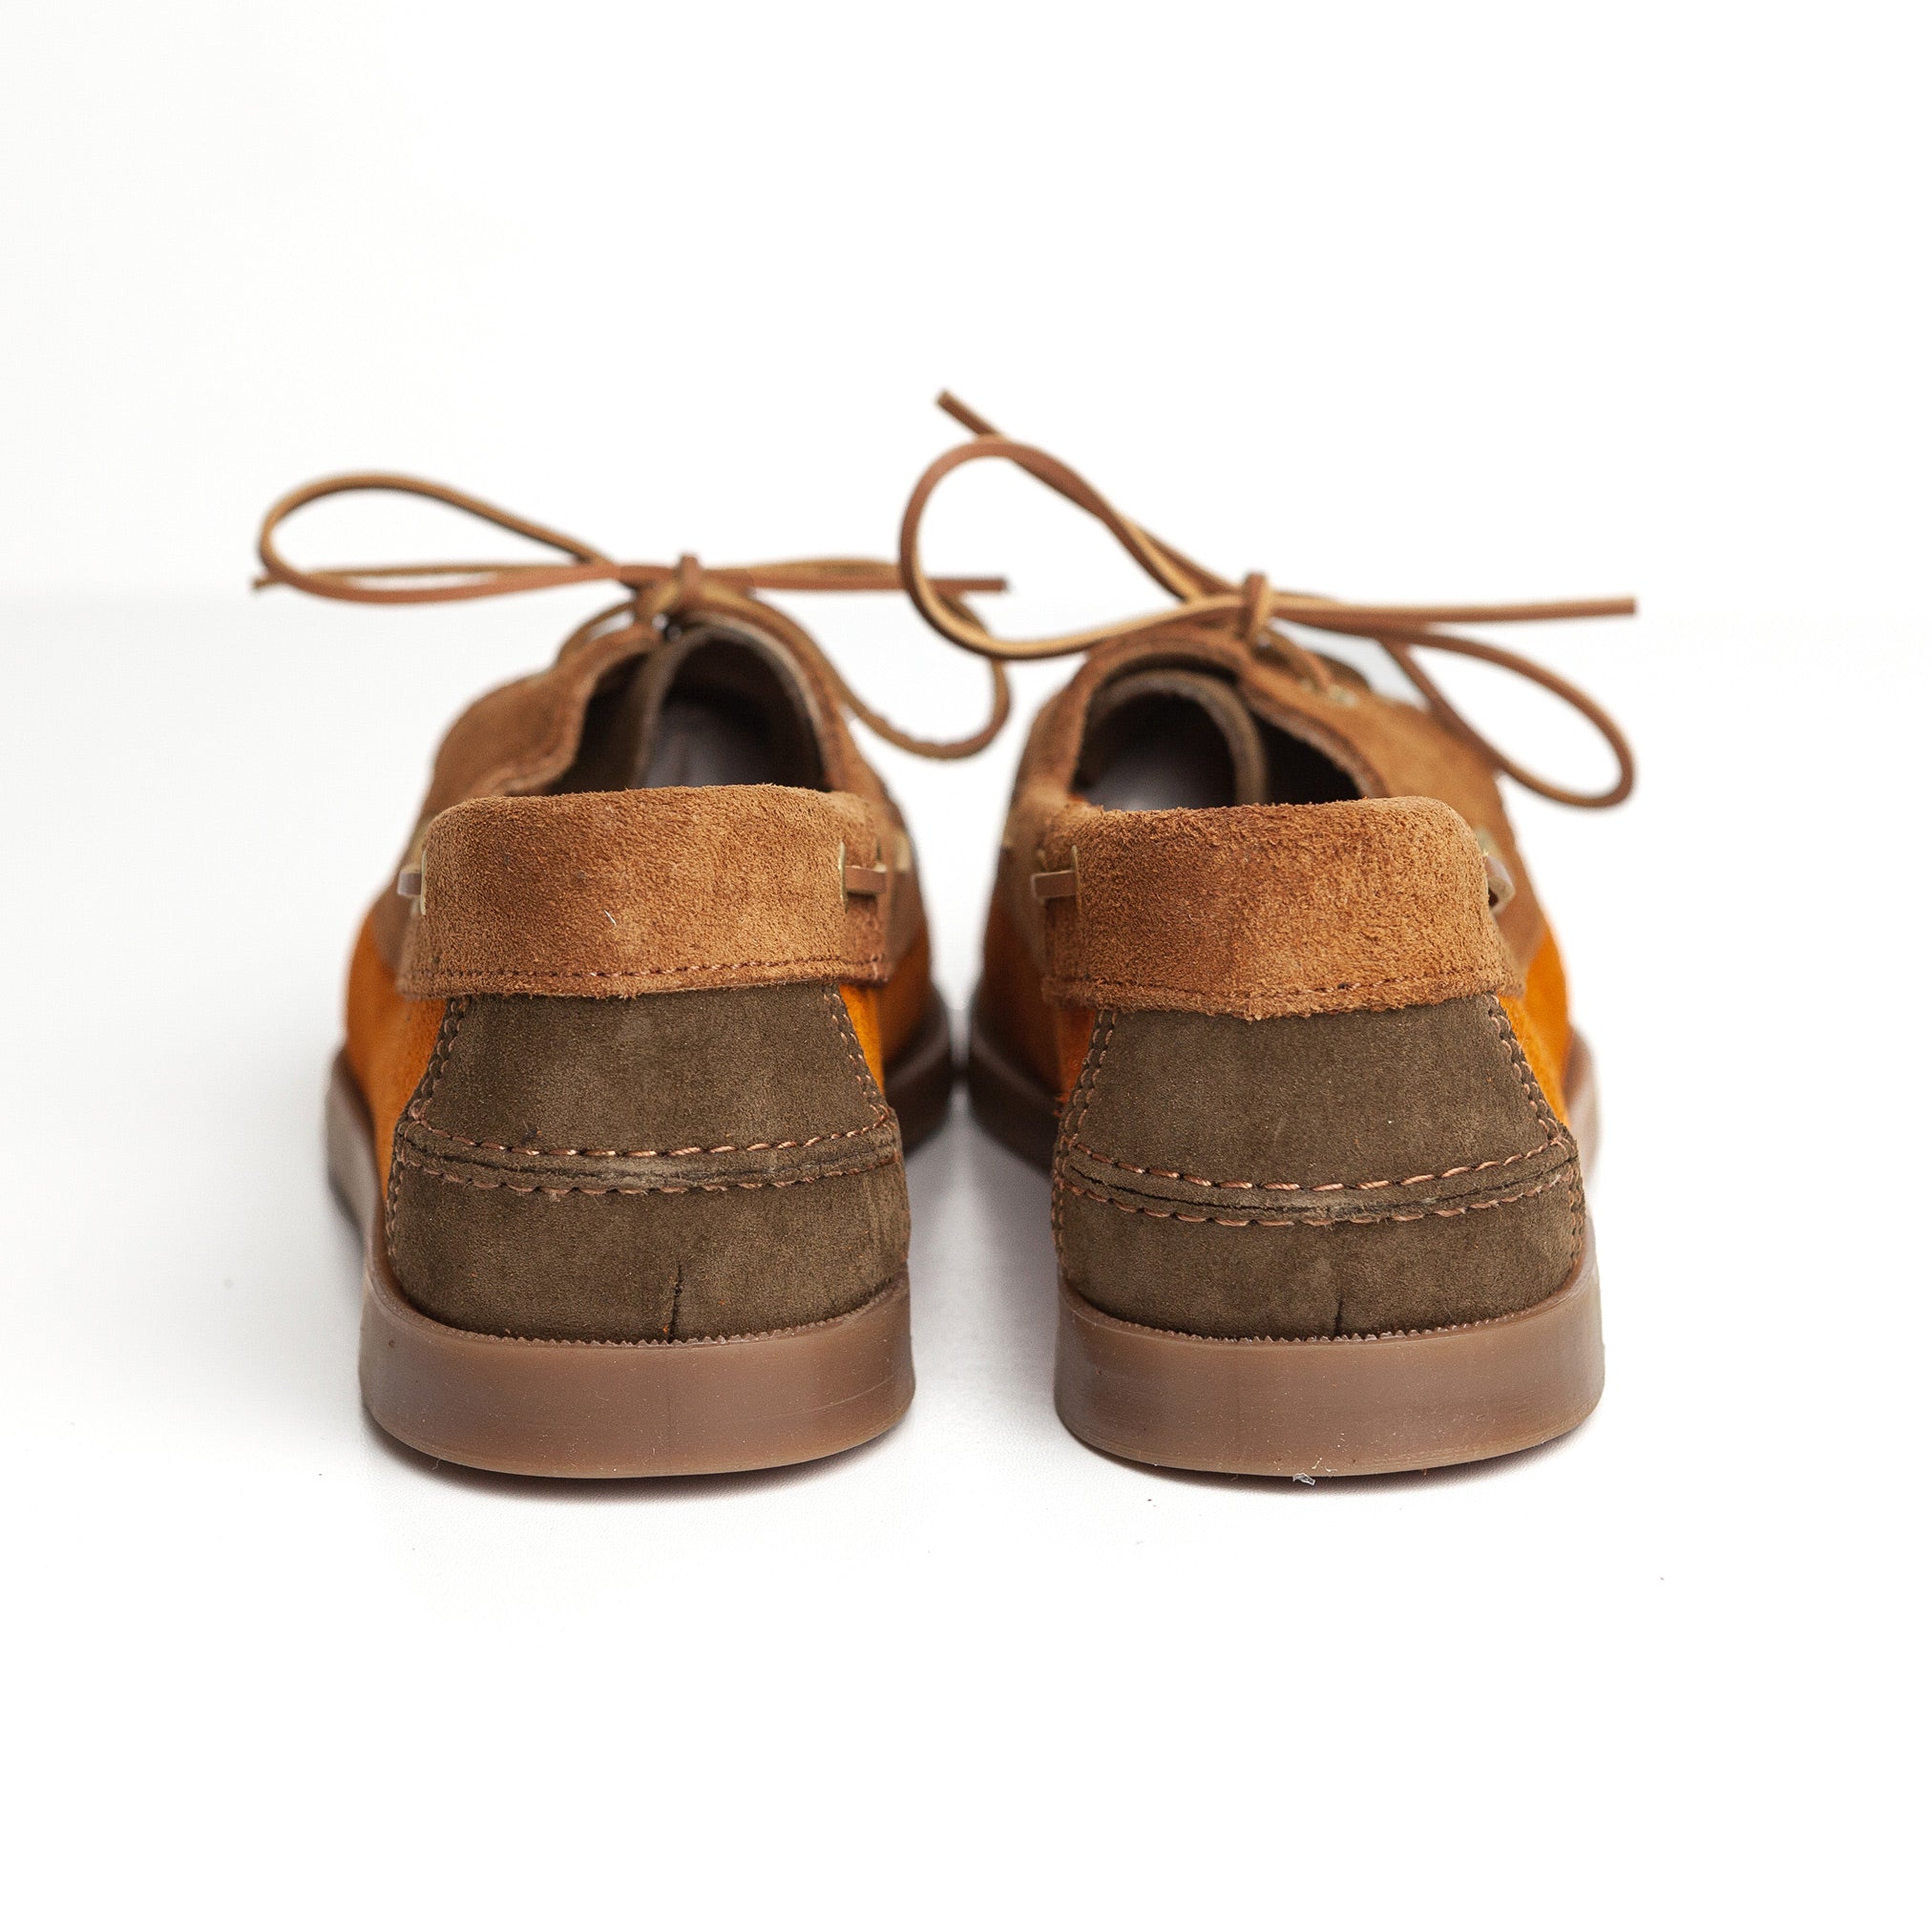 Deck Shoe in Brown & Rust